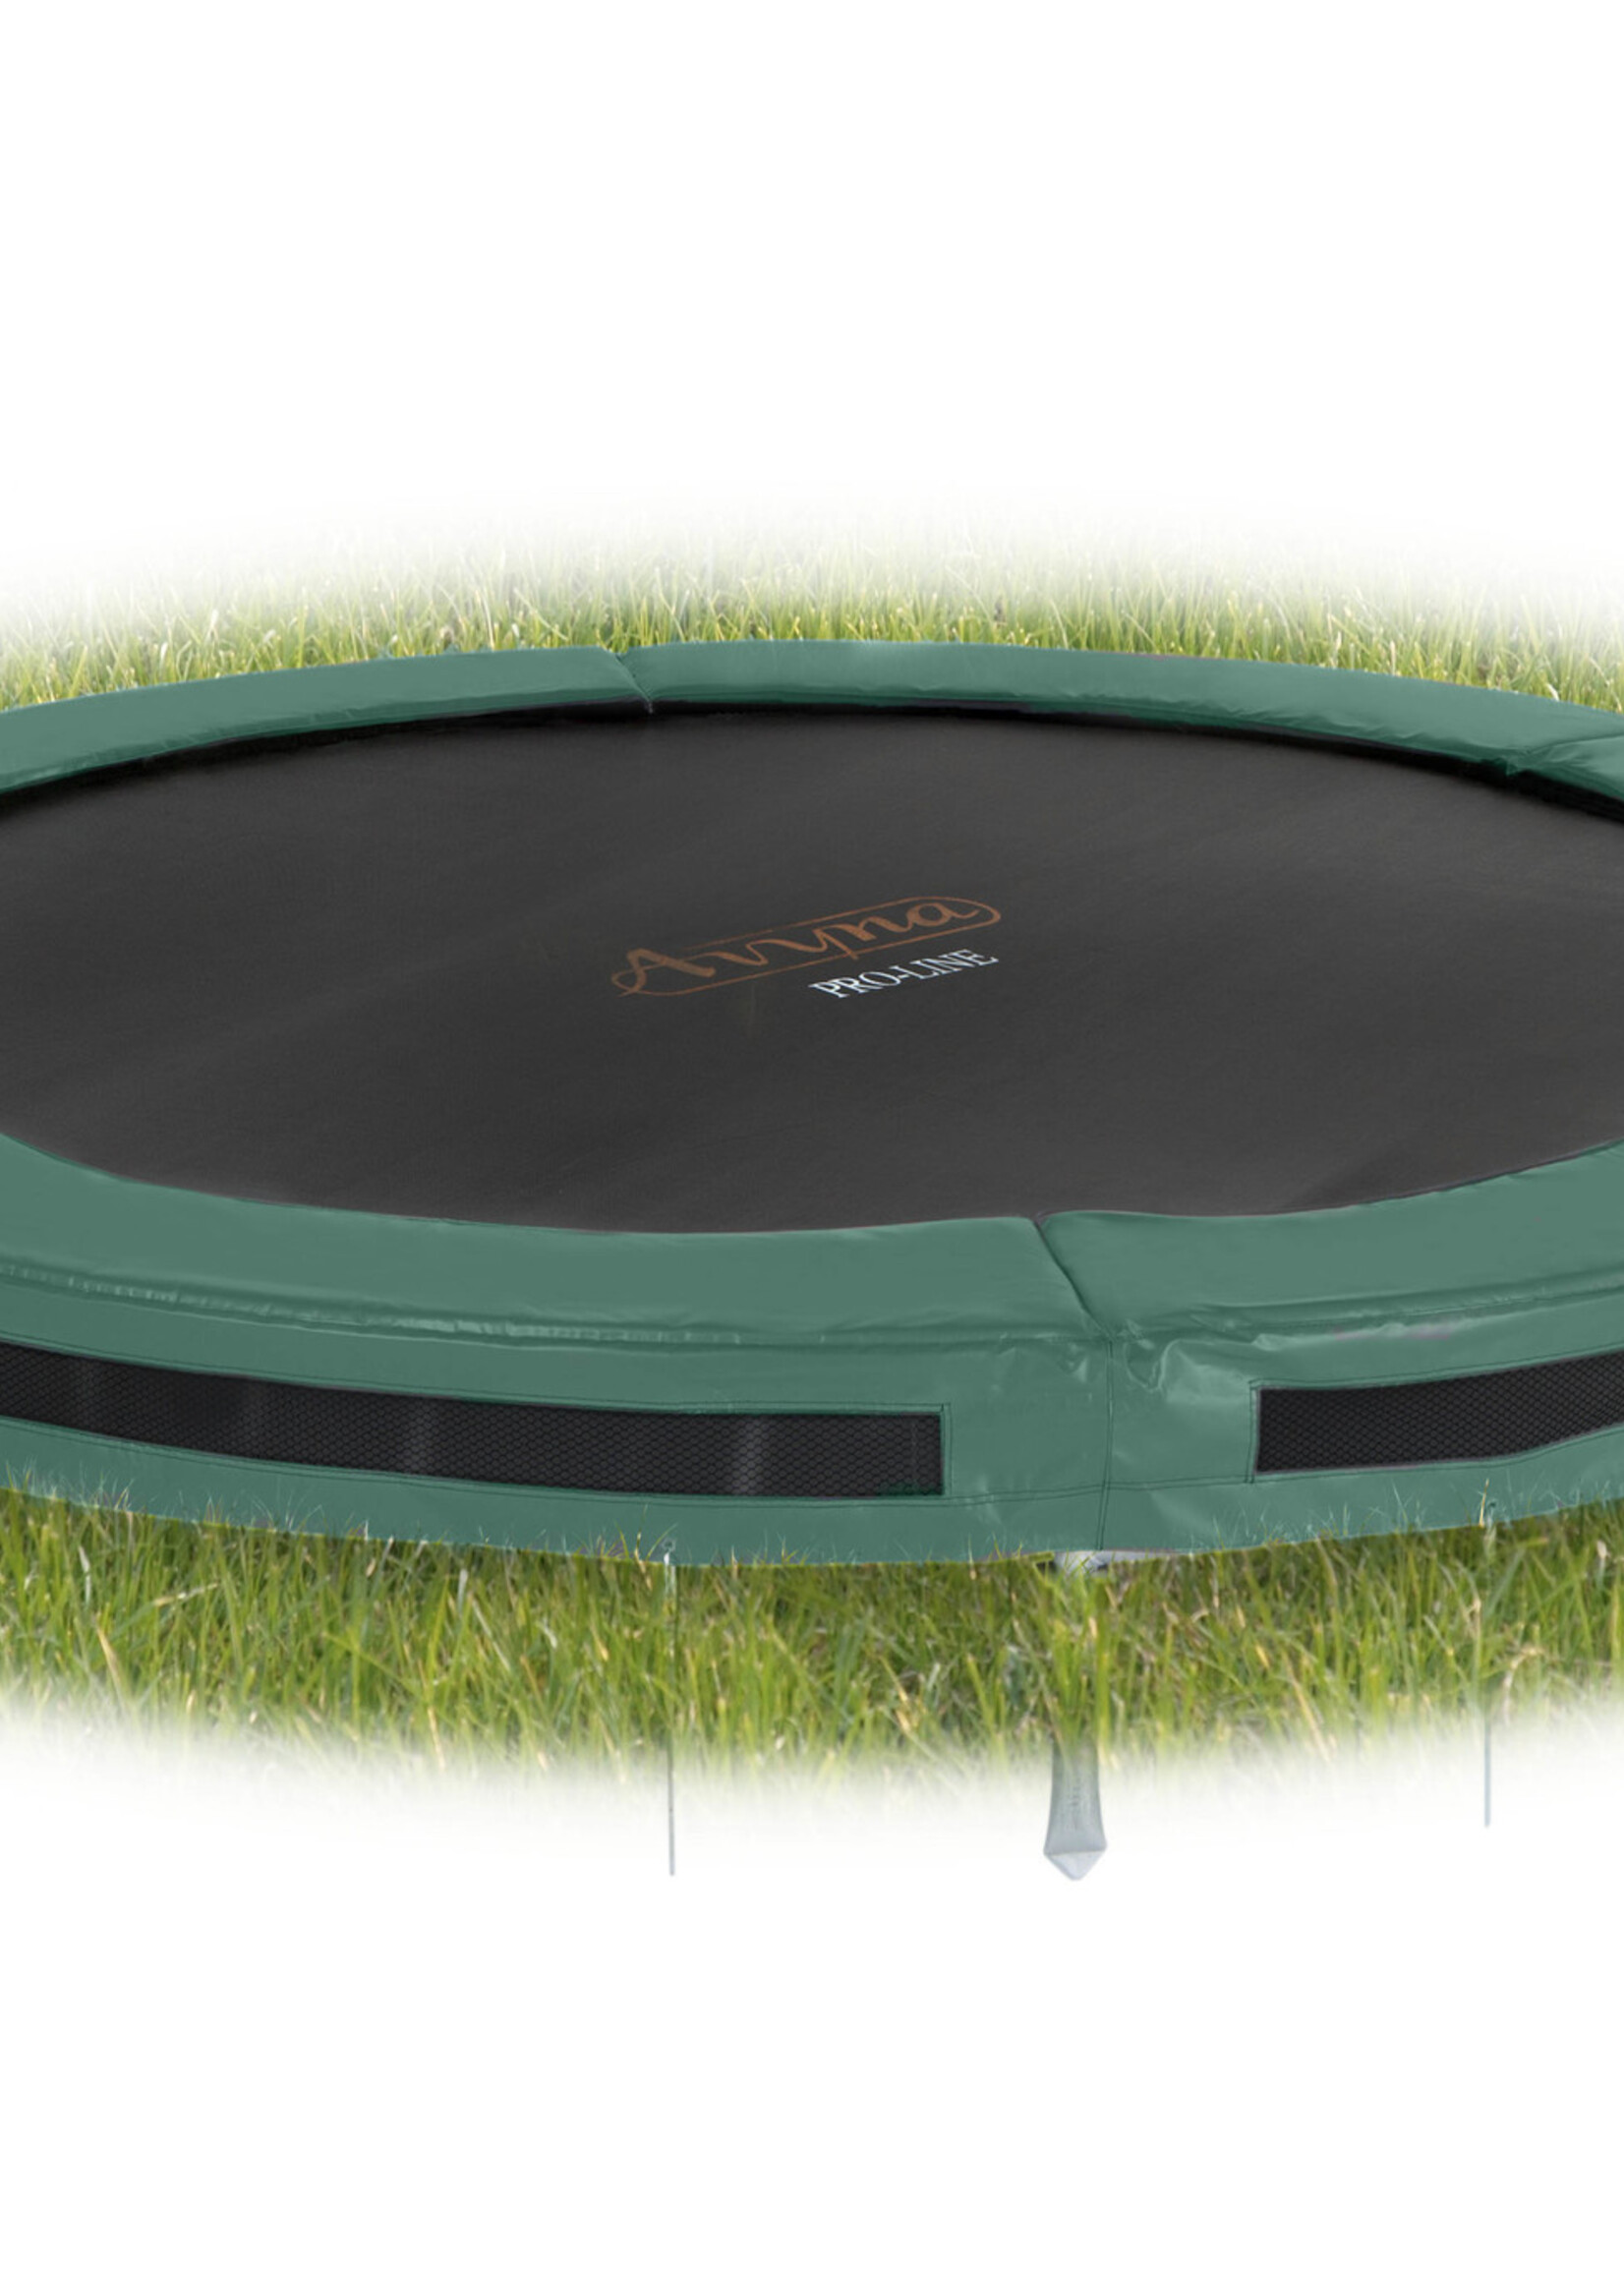 Avyna Ronde trampoline van Avyna voor in de grond, Inground  Ø 245 cm